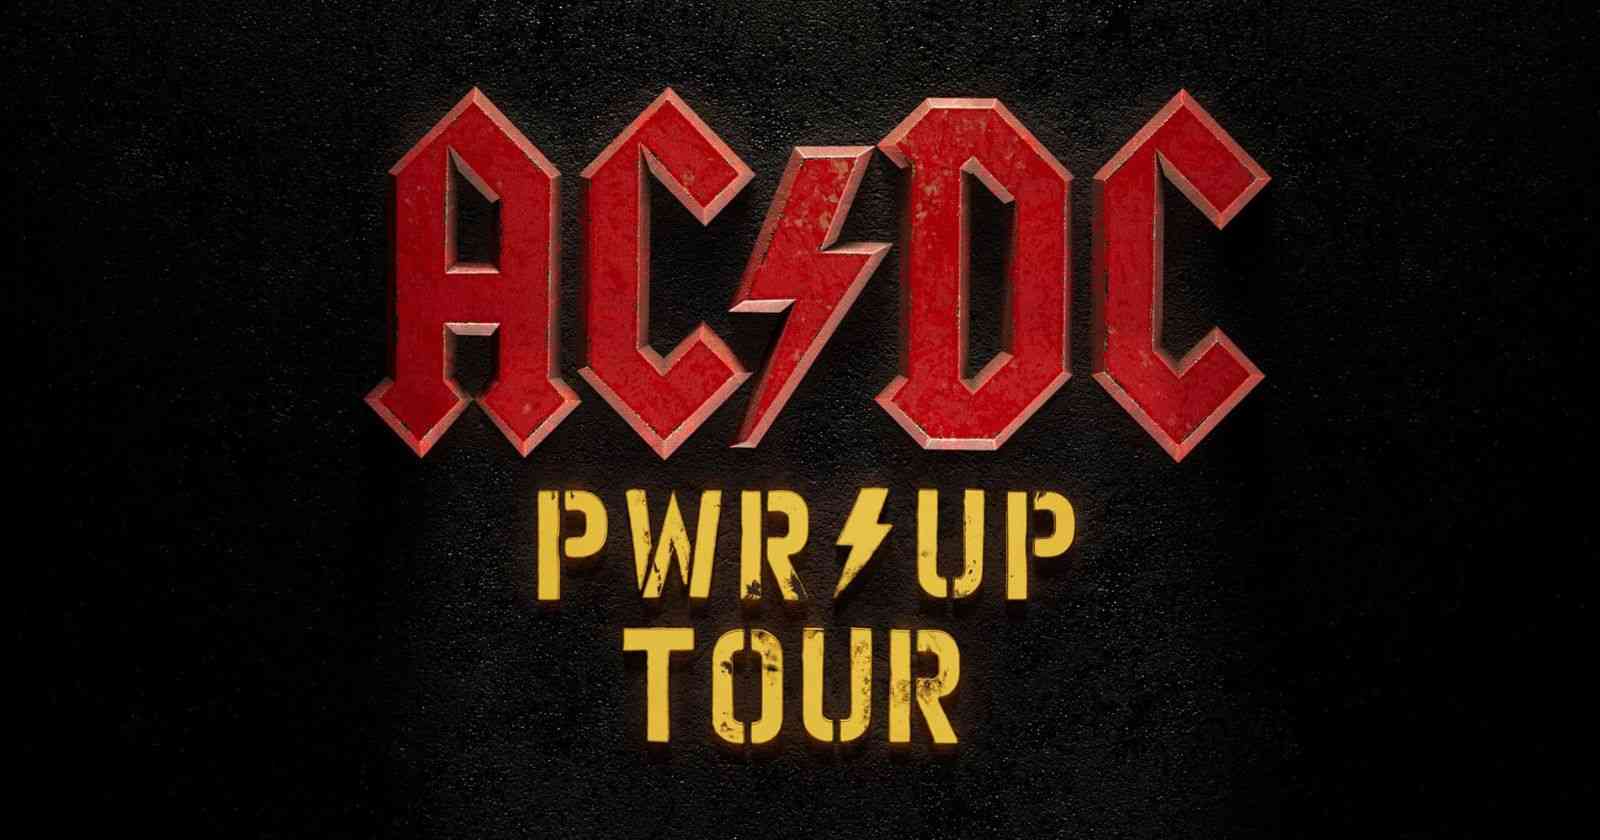 AC/DC power up tour announcement